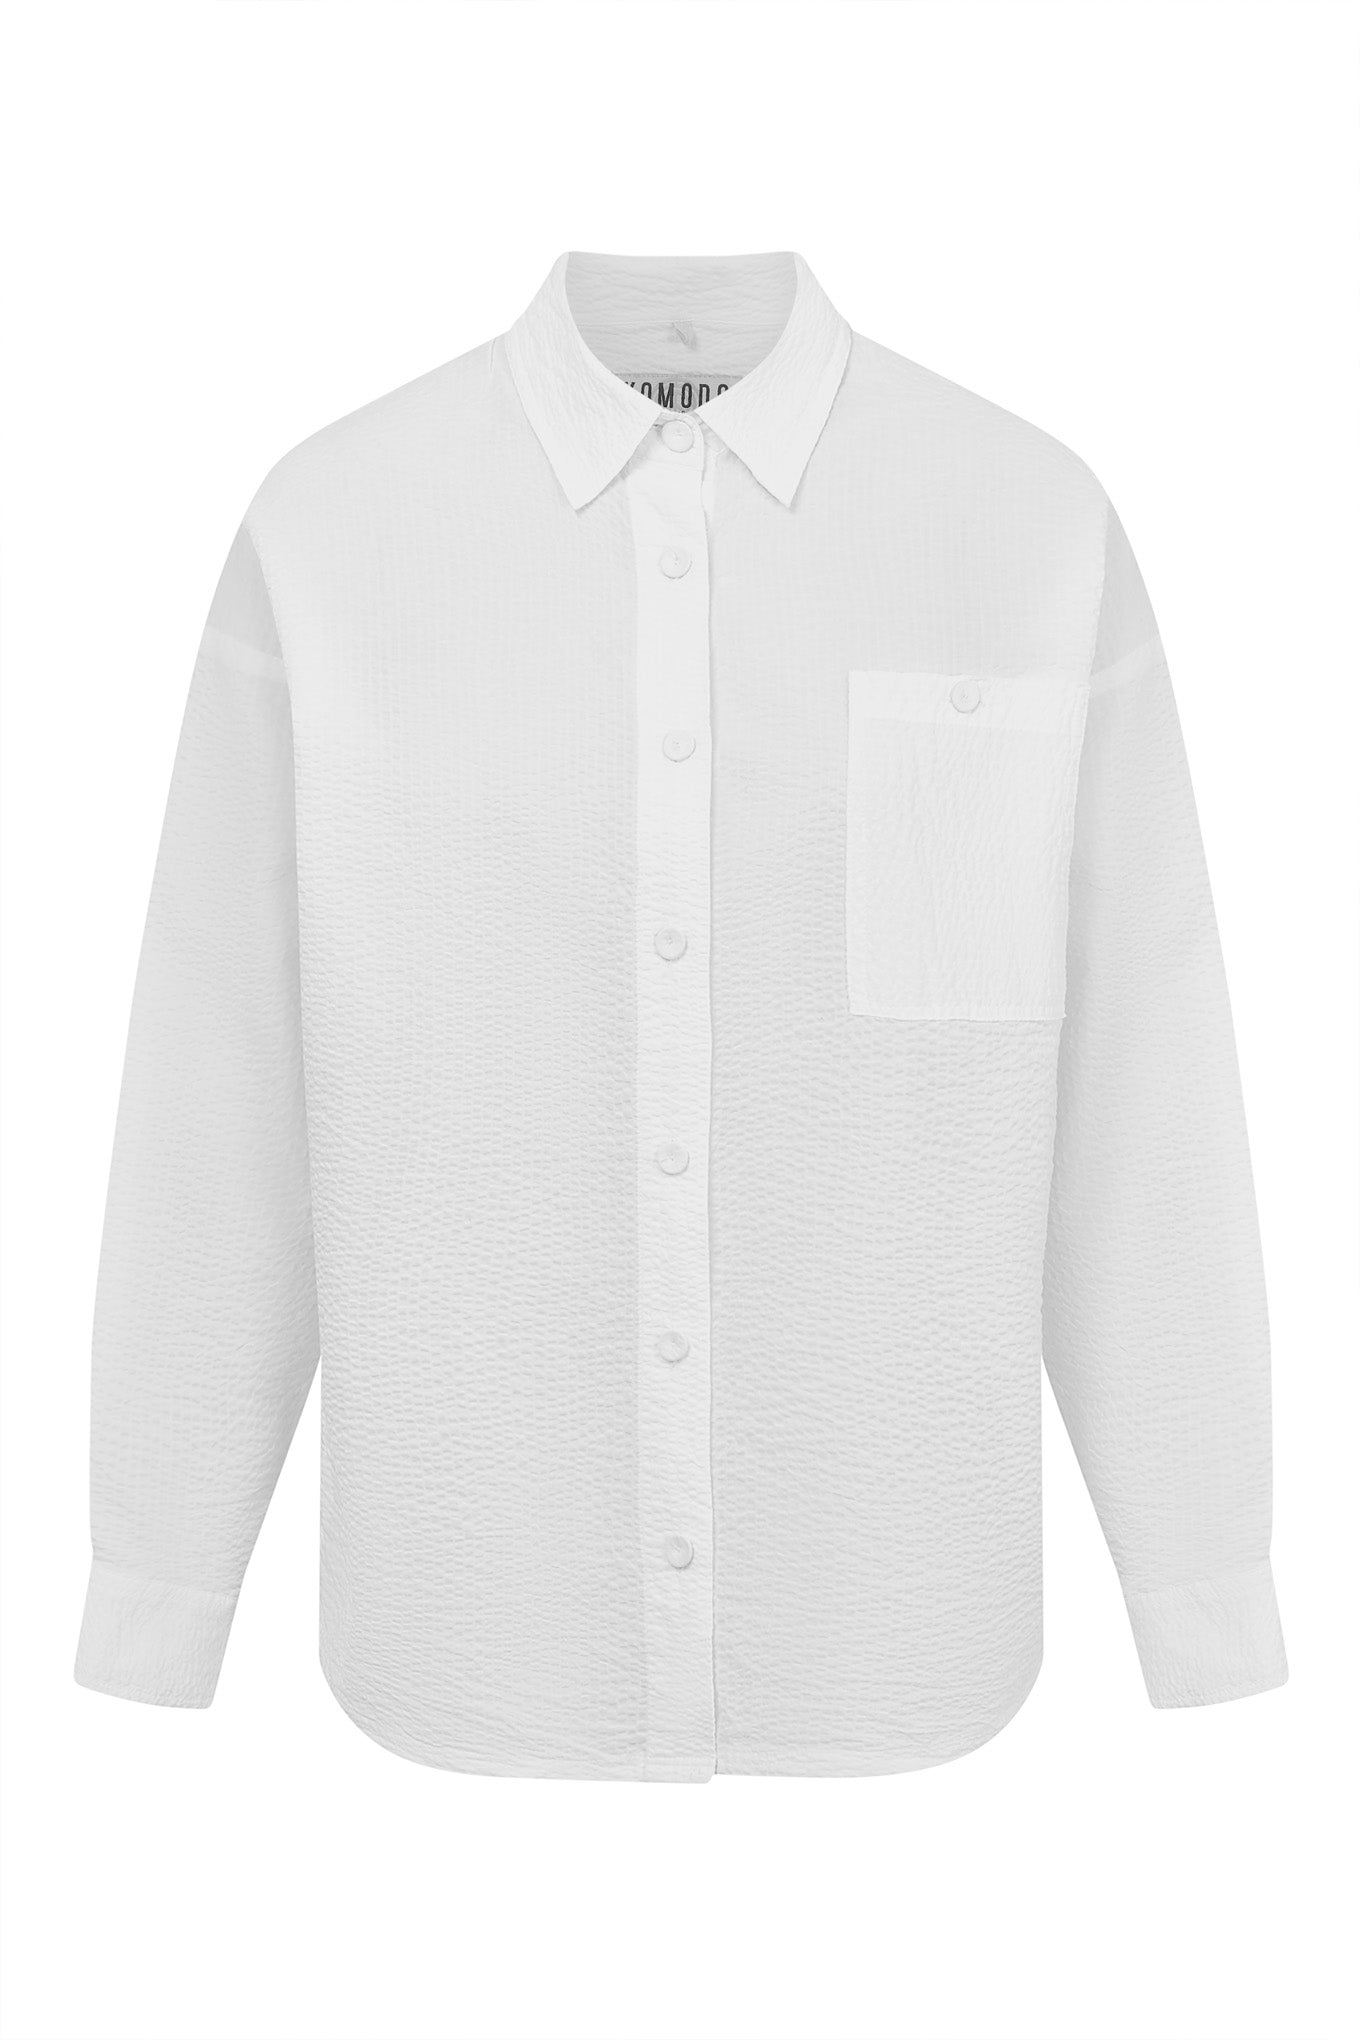 White HANAKO shirt made of organic cotton from Komodo